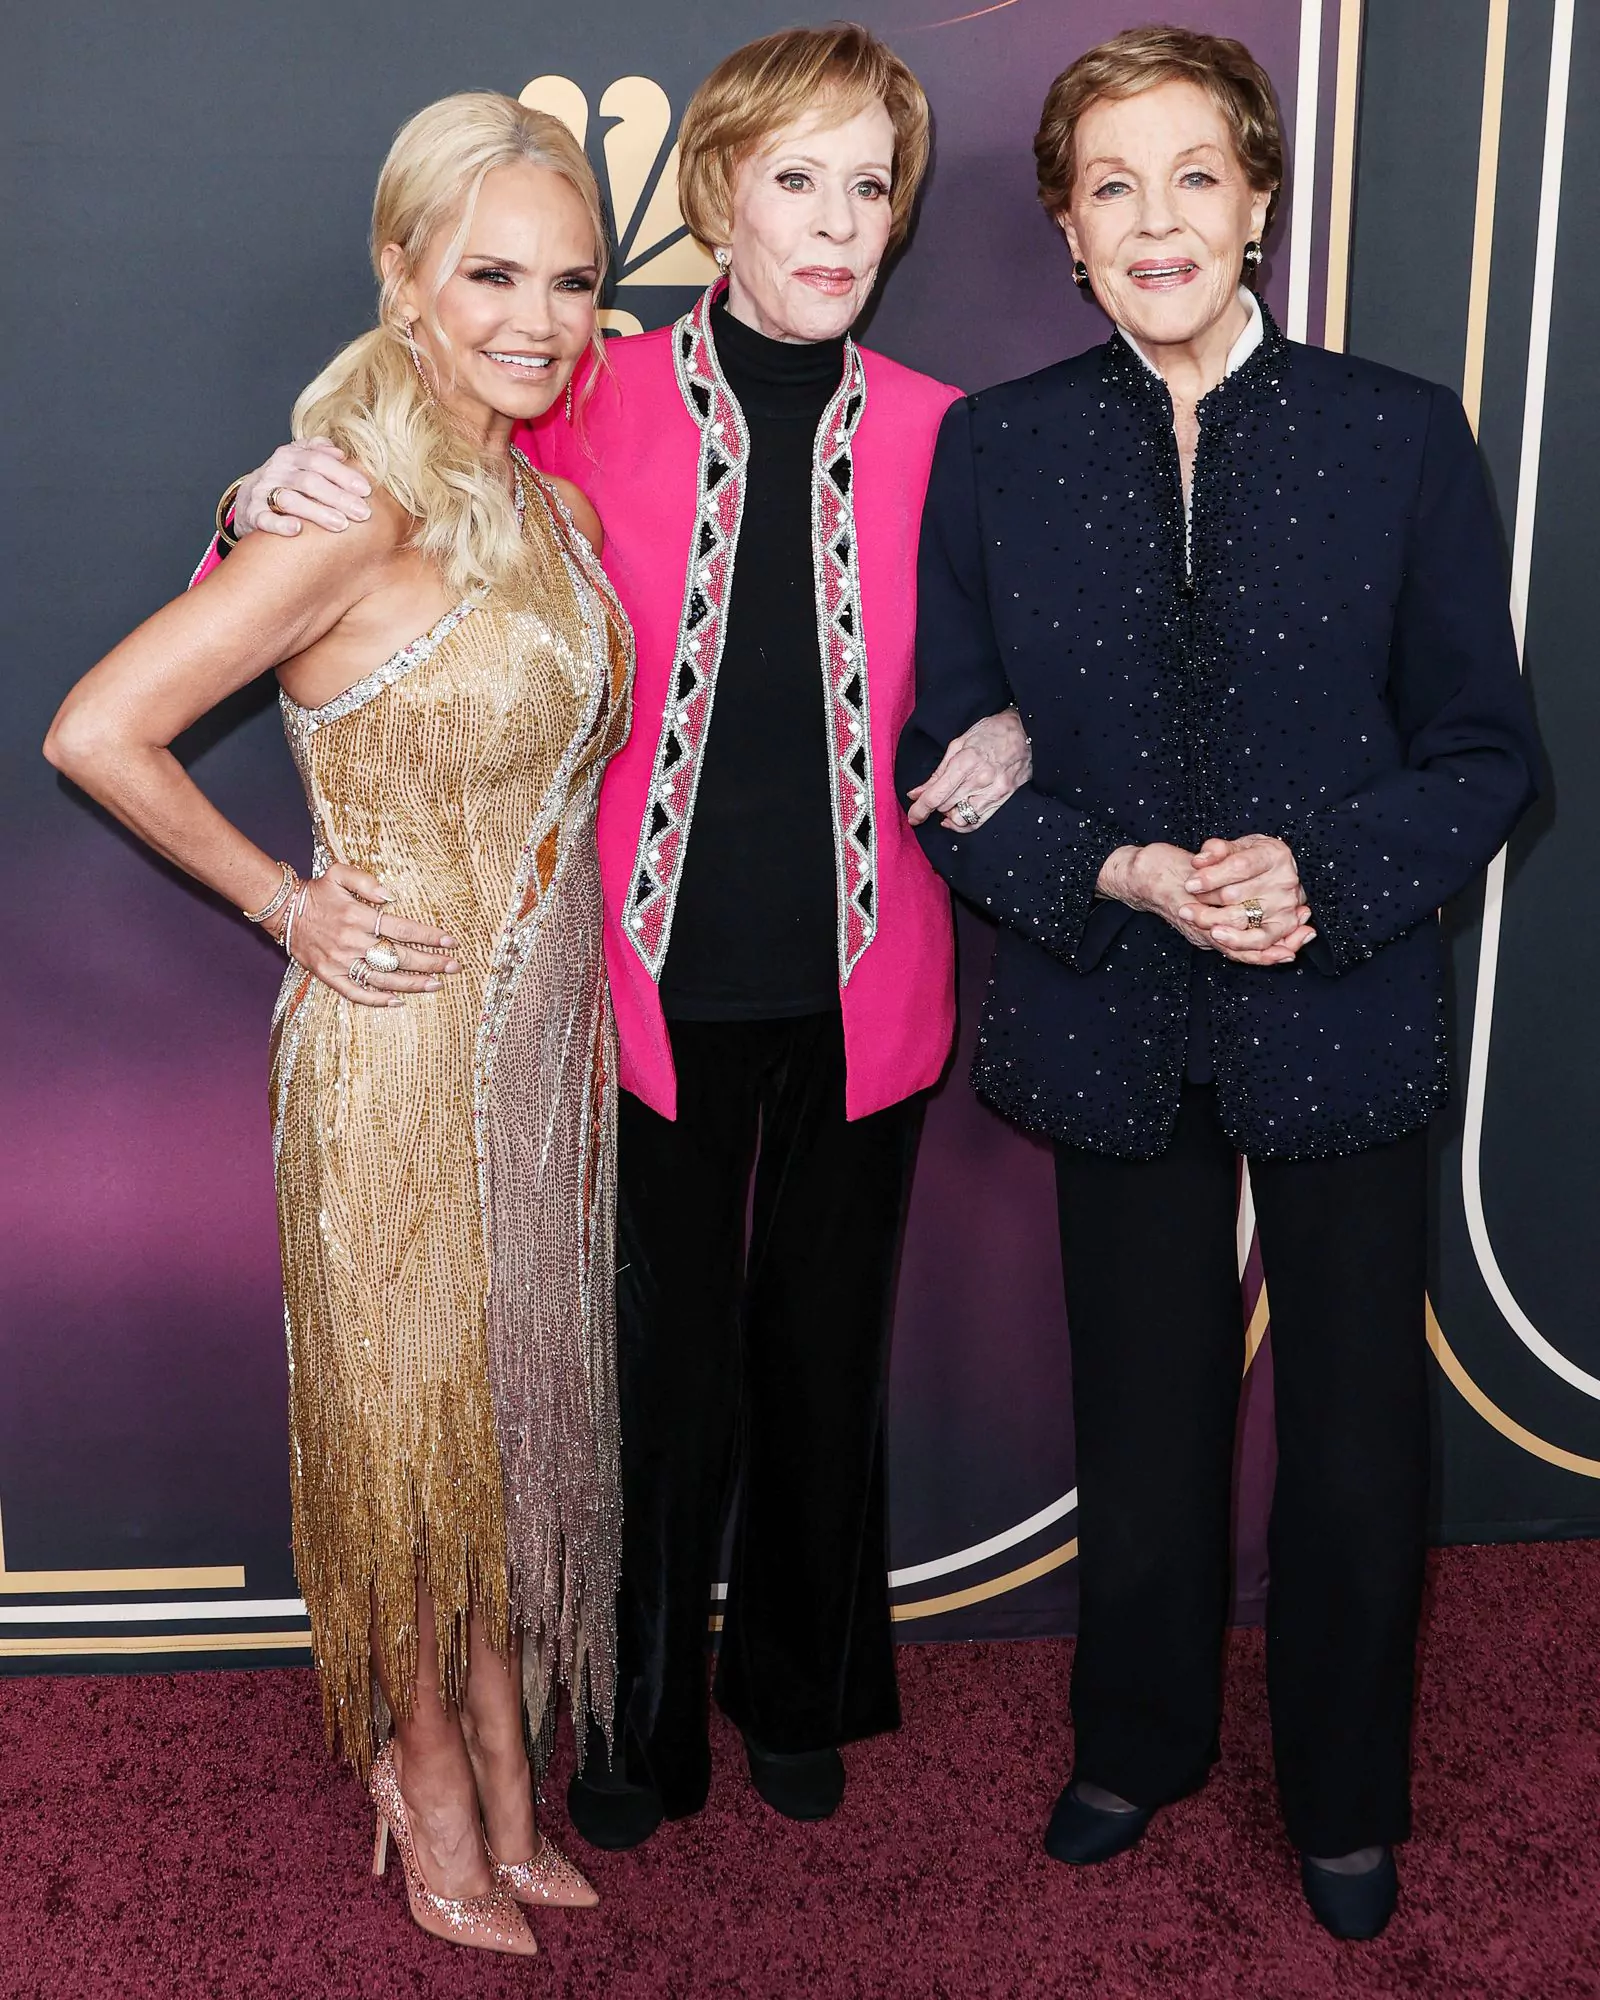 Кристин Ченоуэт, Кэрол Бернетт и Джули Эндрюс на красной дорожке вечера в честь 90-летия Кэрол Бернетт в Голливуде, 2 марта 2023 г.